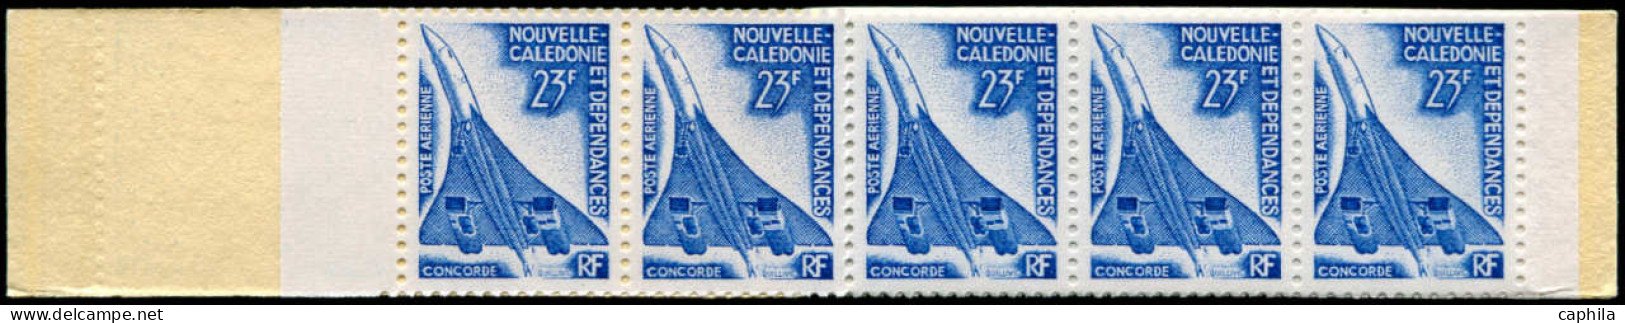 NOUVELLE-CALEDONIE Poste Aérienne ** - 139, Carnet Complet: Concorde - Cote: 370 - Neufs